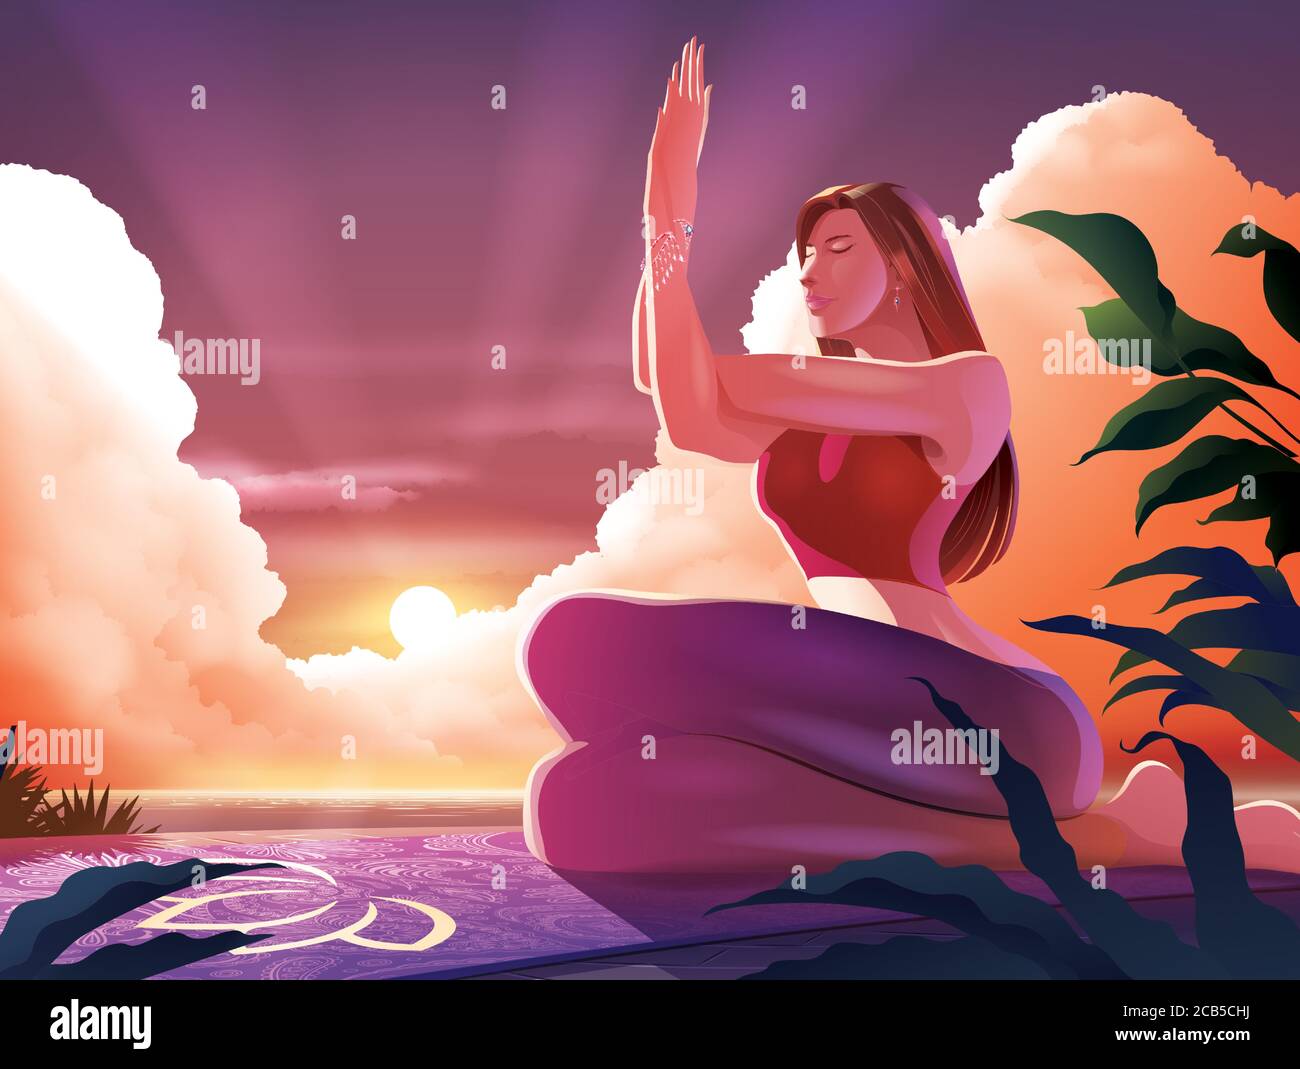 Vektor-Illustration einer schönen Dame, die Yoga in garudasana macht Pose oder der Adler Pose an der Küste mit dem sonnenaufgang am Morgen Stock Vektor